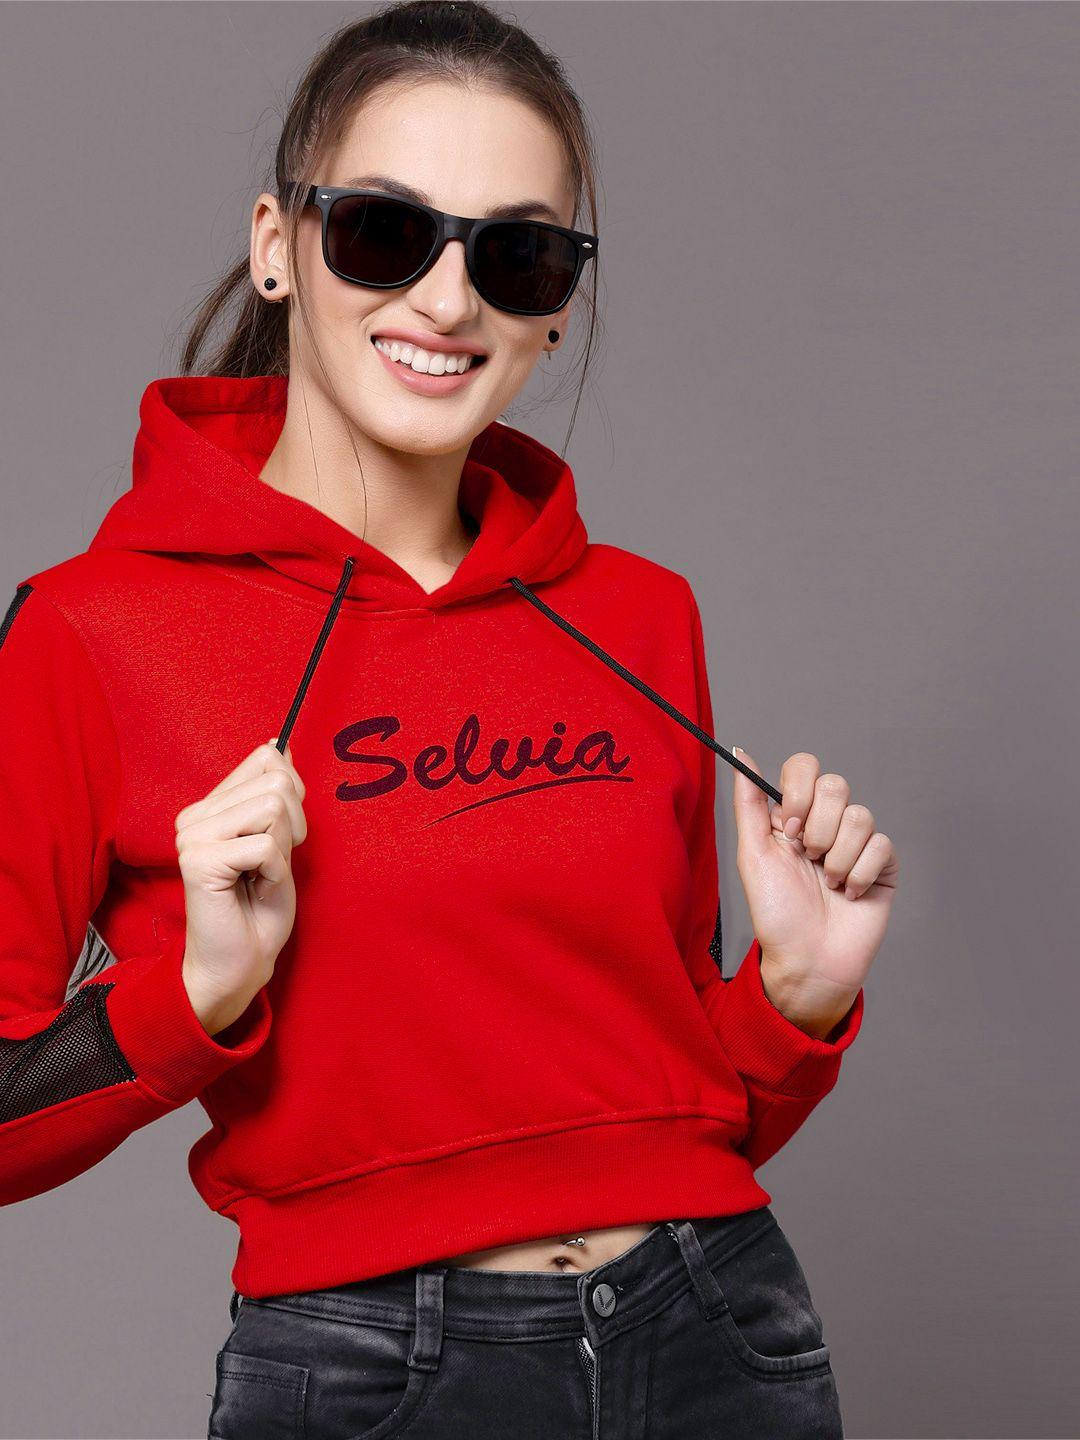 selvia women red & black brand logo printed hooded sweatshirt